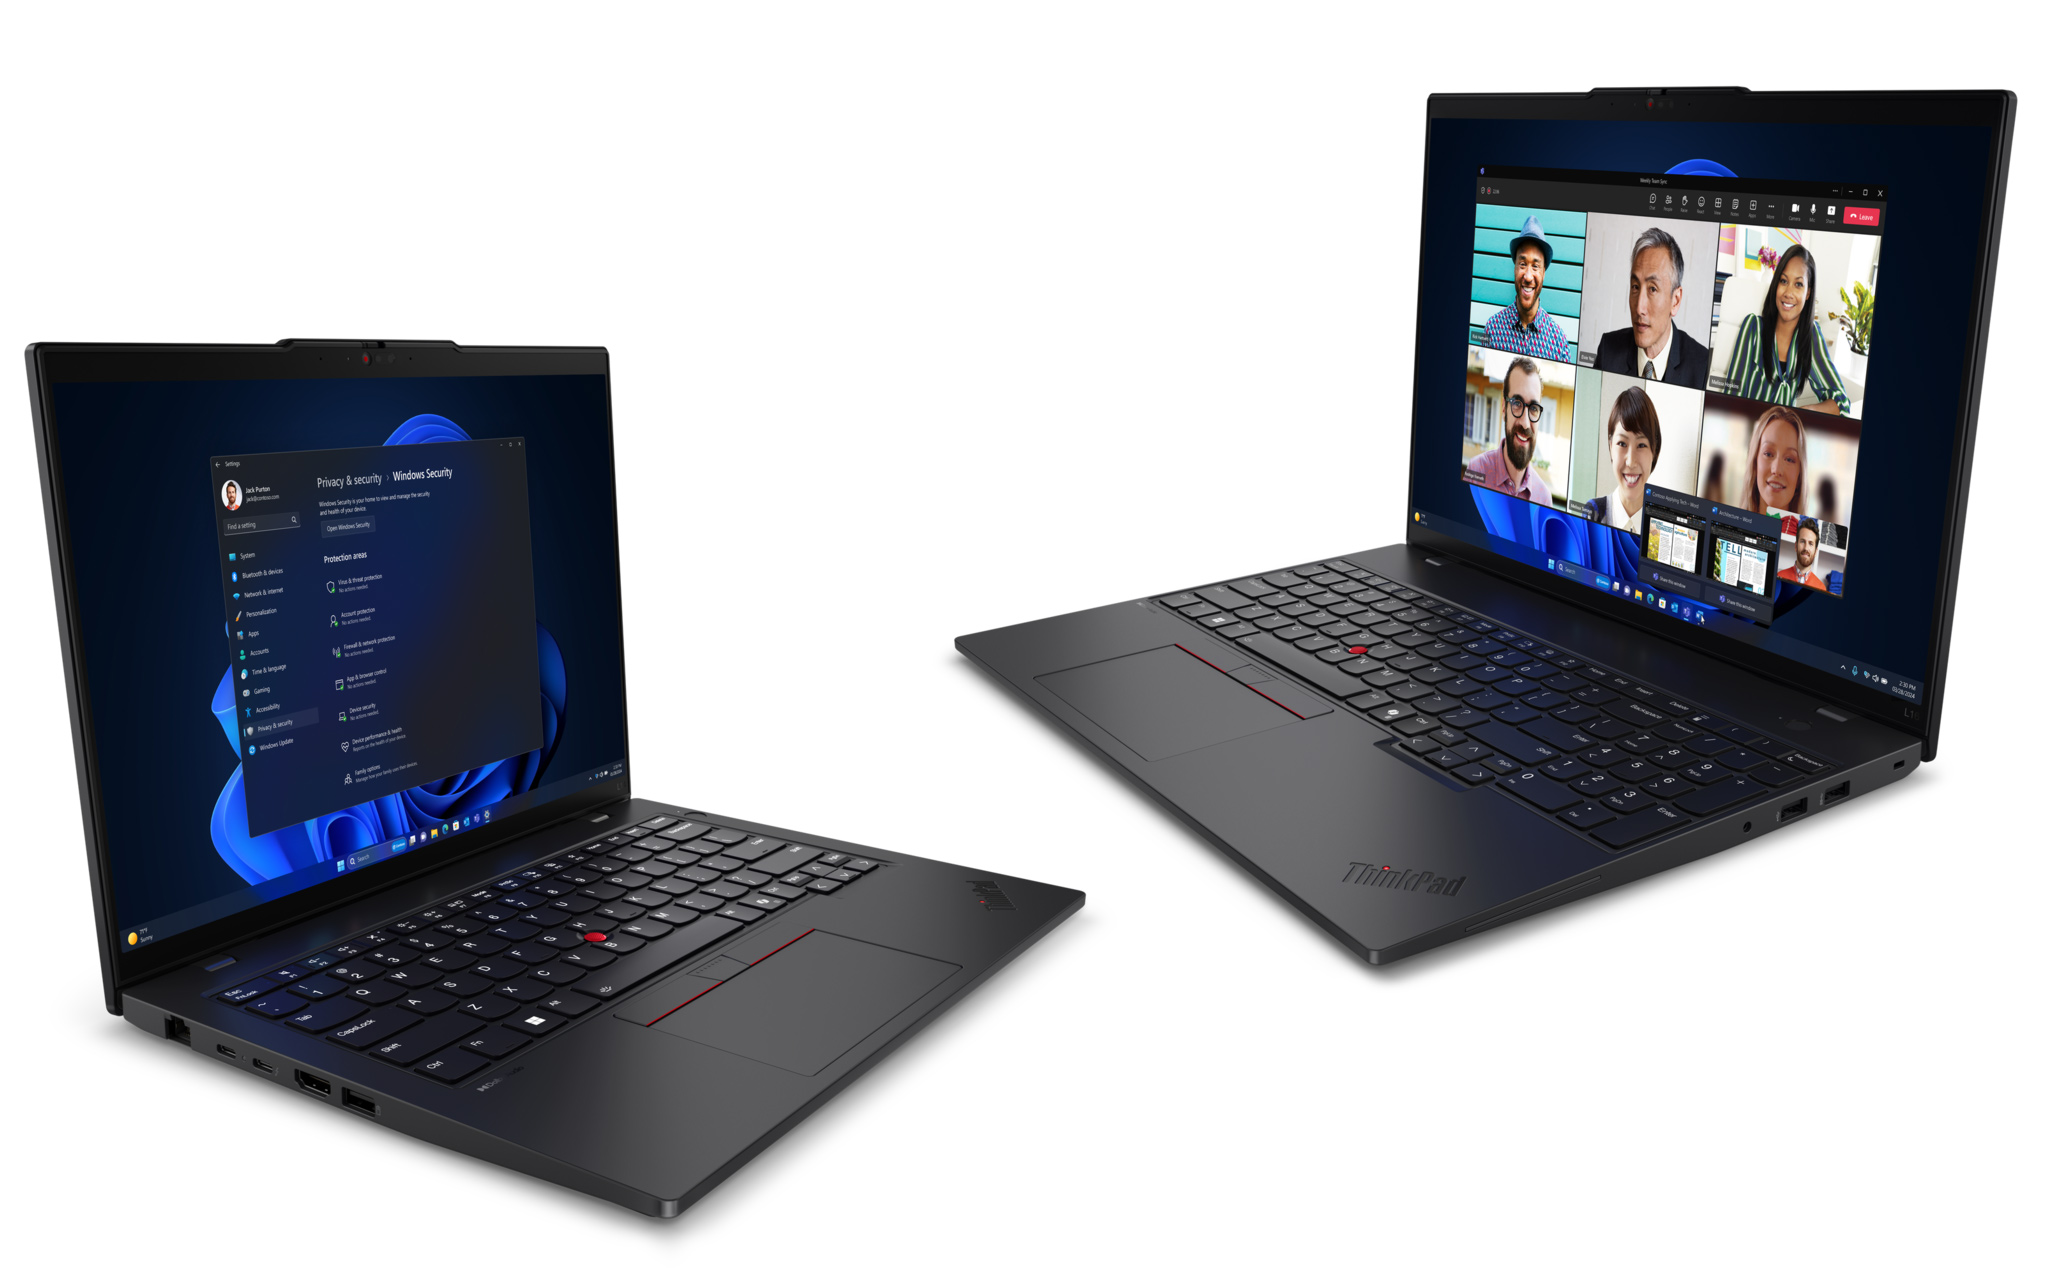 Lenovo chính thức bán ra ThinkPad L series: 3 kích thước màn hình, dễ dàng sửa chữa, giá từ 999 USD